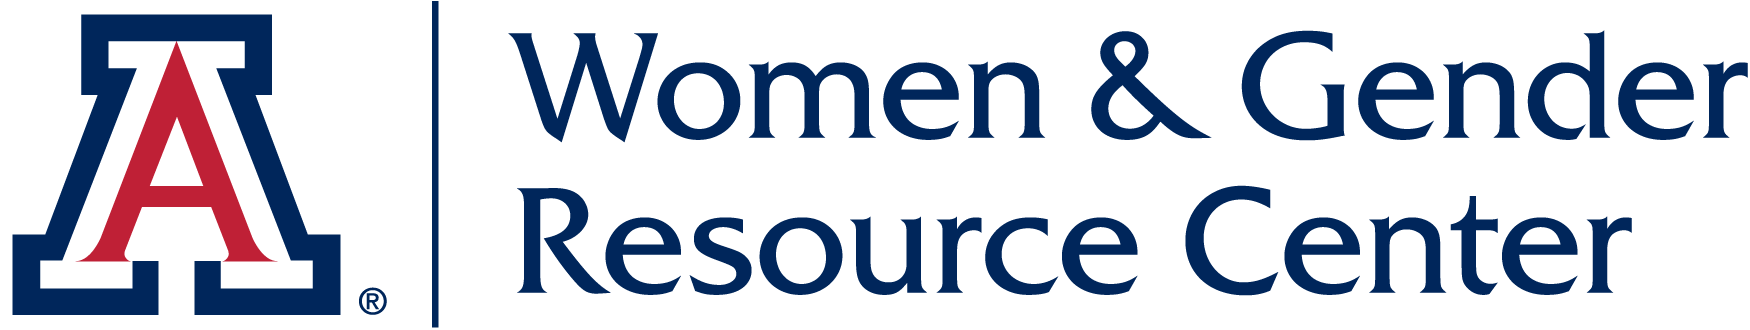 Women & Gender Resource Center | Home